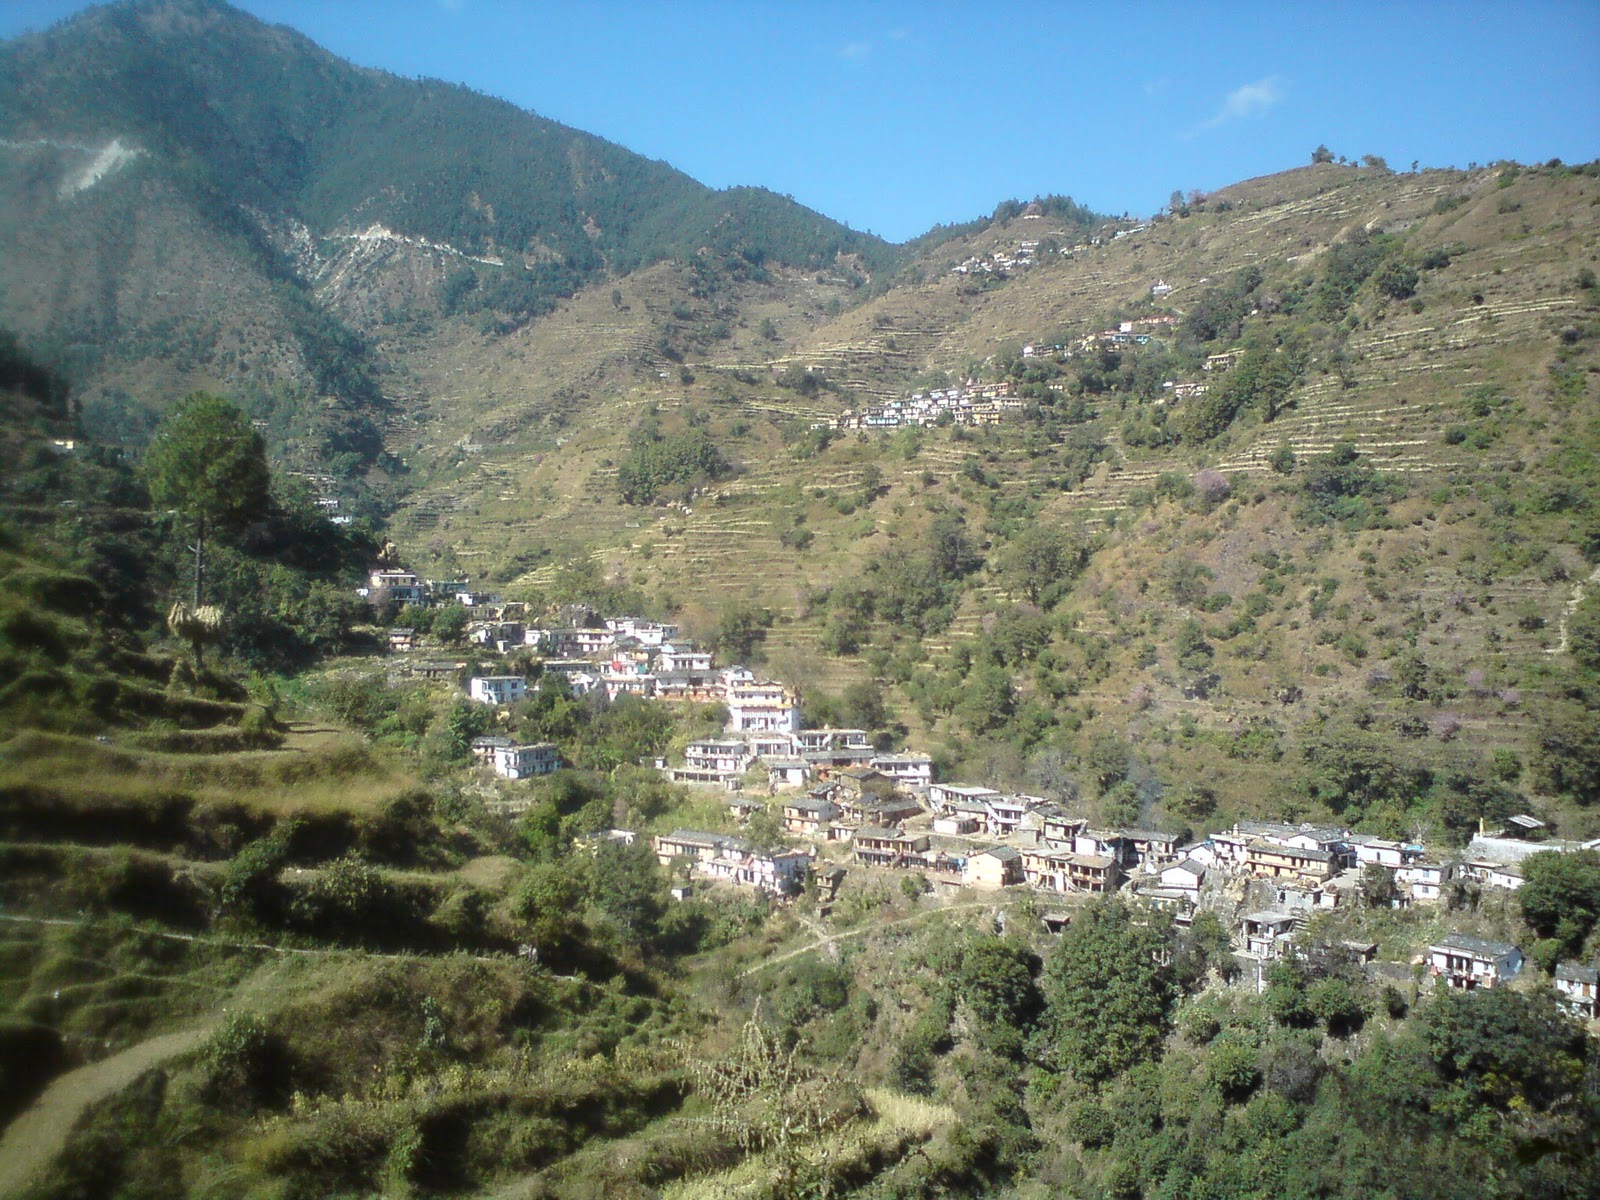 Himalayan Cities